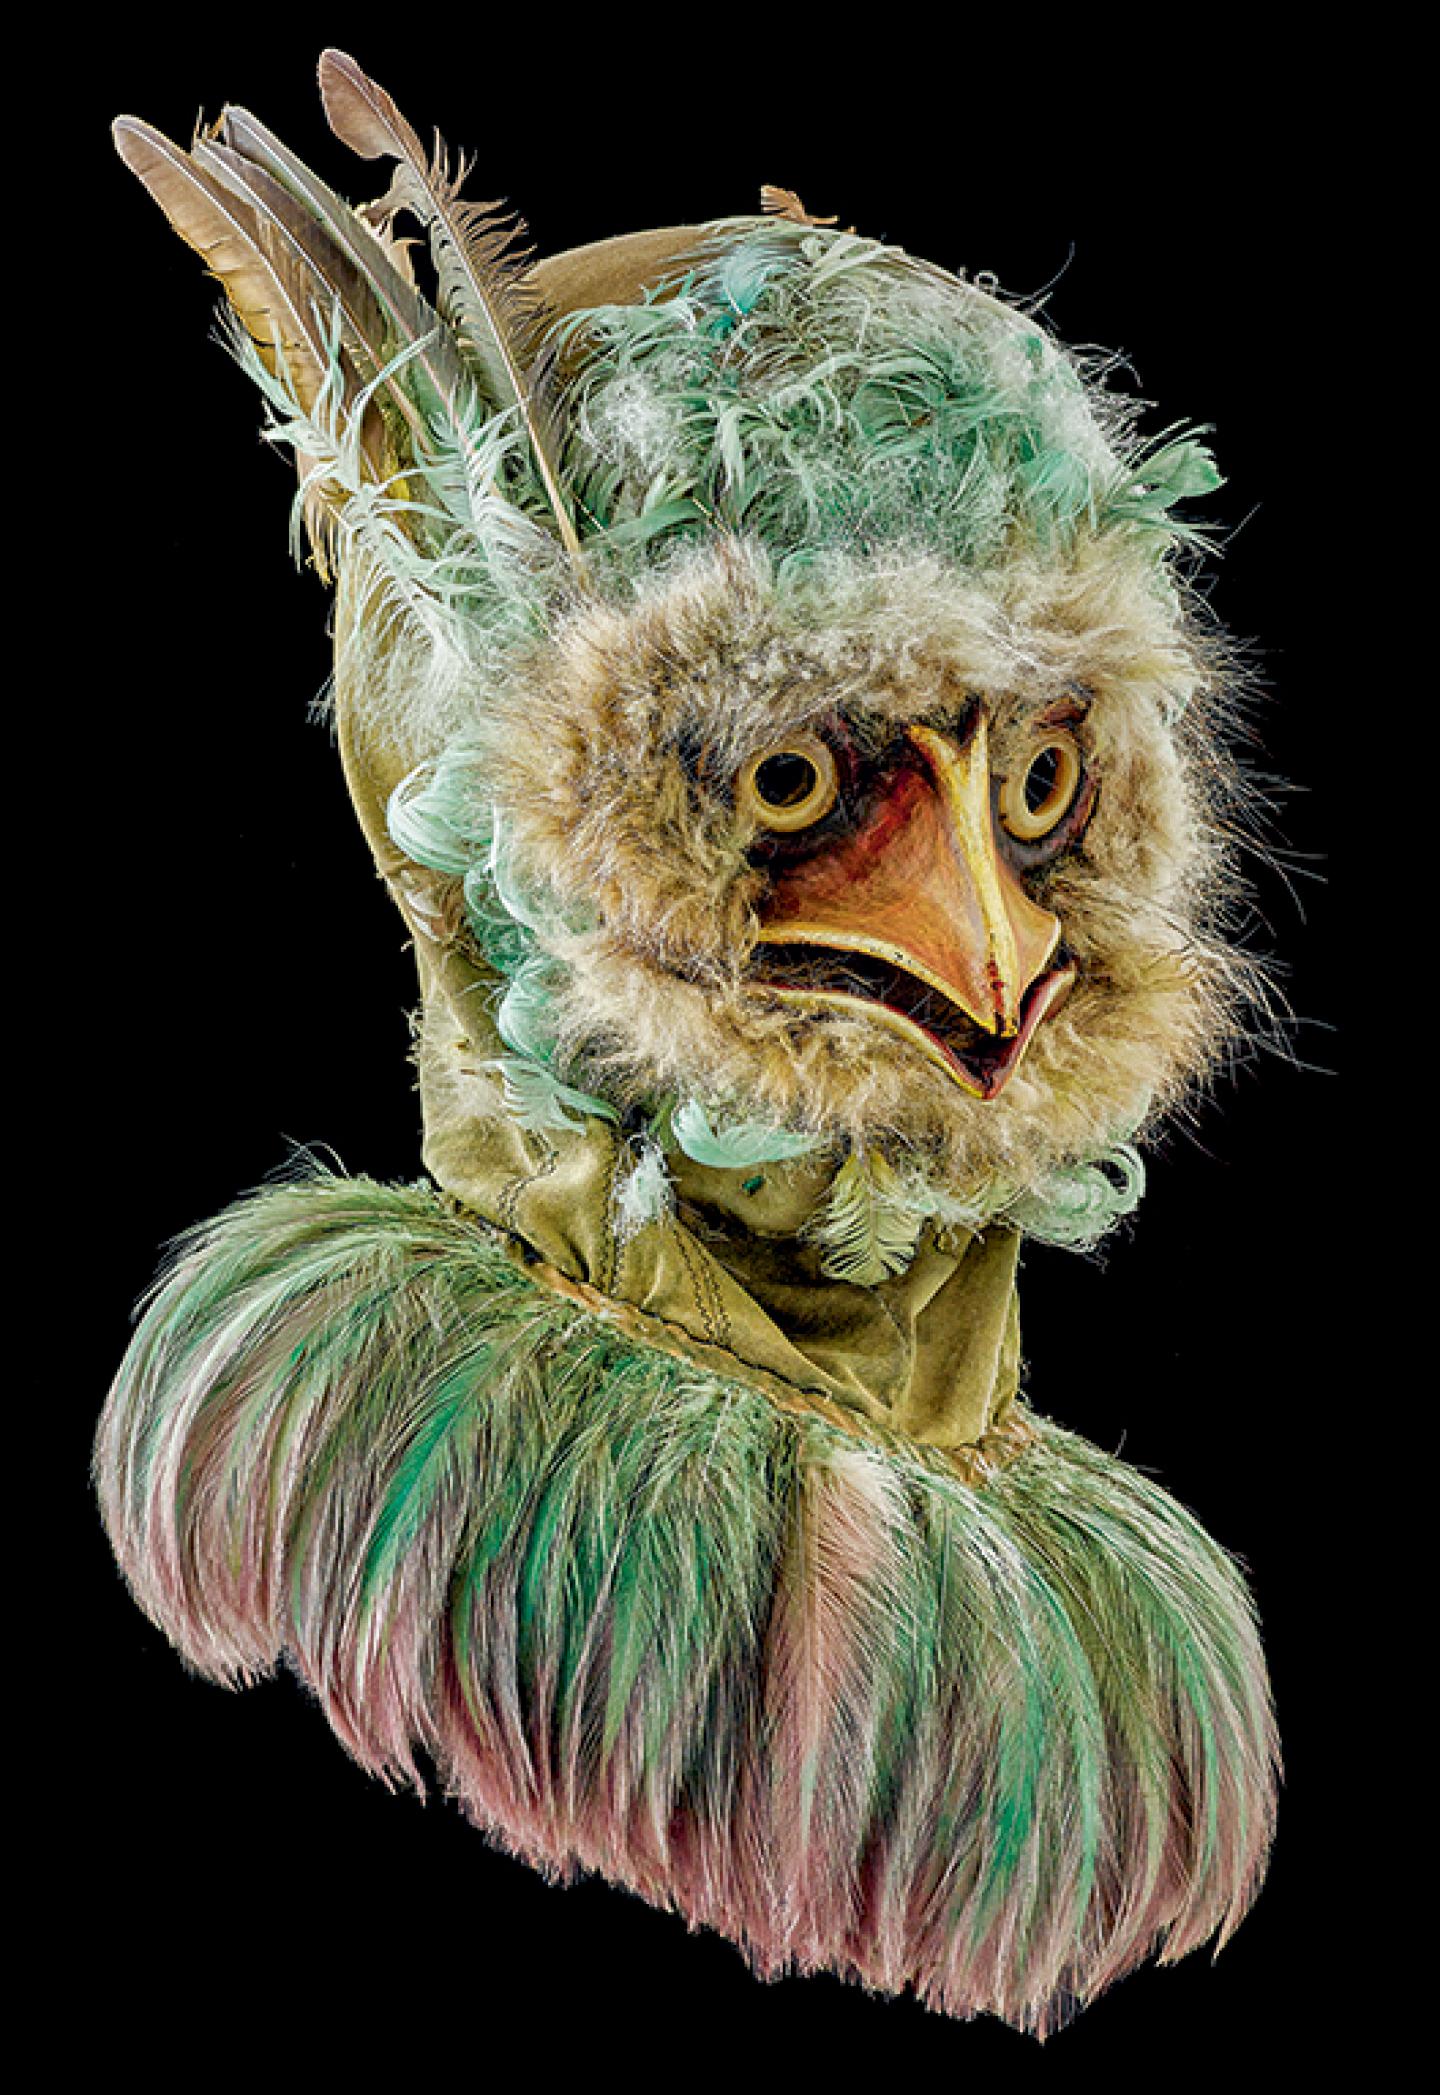 WERNER STRUB (1935-2012) Mixte L’Oiseau vert dans L’Oiseau vert de Gozzi – MeS : Benno Besson. Théâtre de la Comédie et en tournée. 1982. Tissu, cuir, fourrure, plumes, corne, élastiques, fermeture éclair.